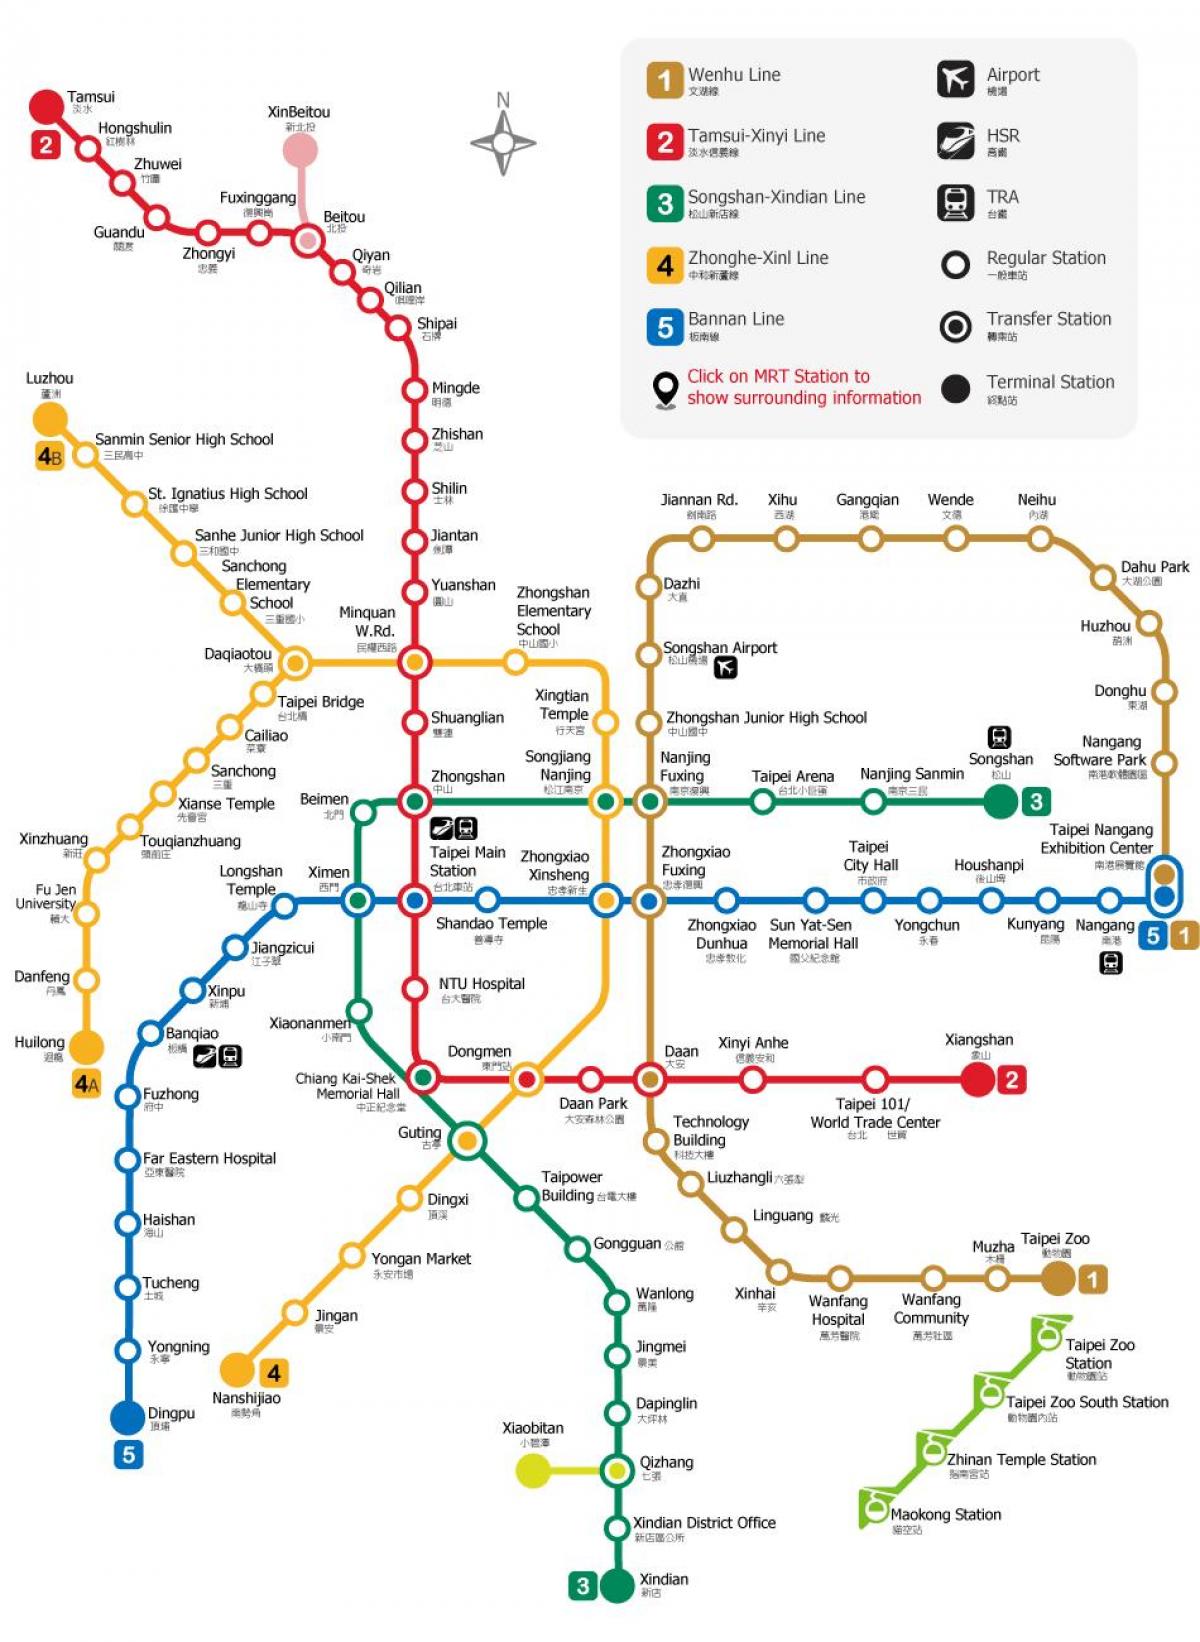 Dworca kolejowego w Tajpej mapie